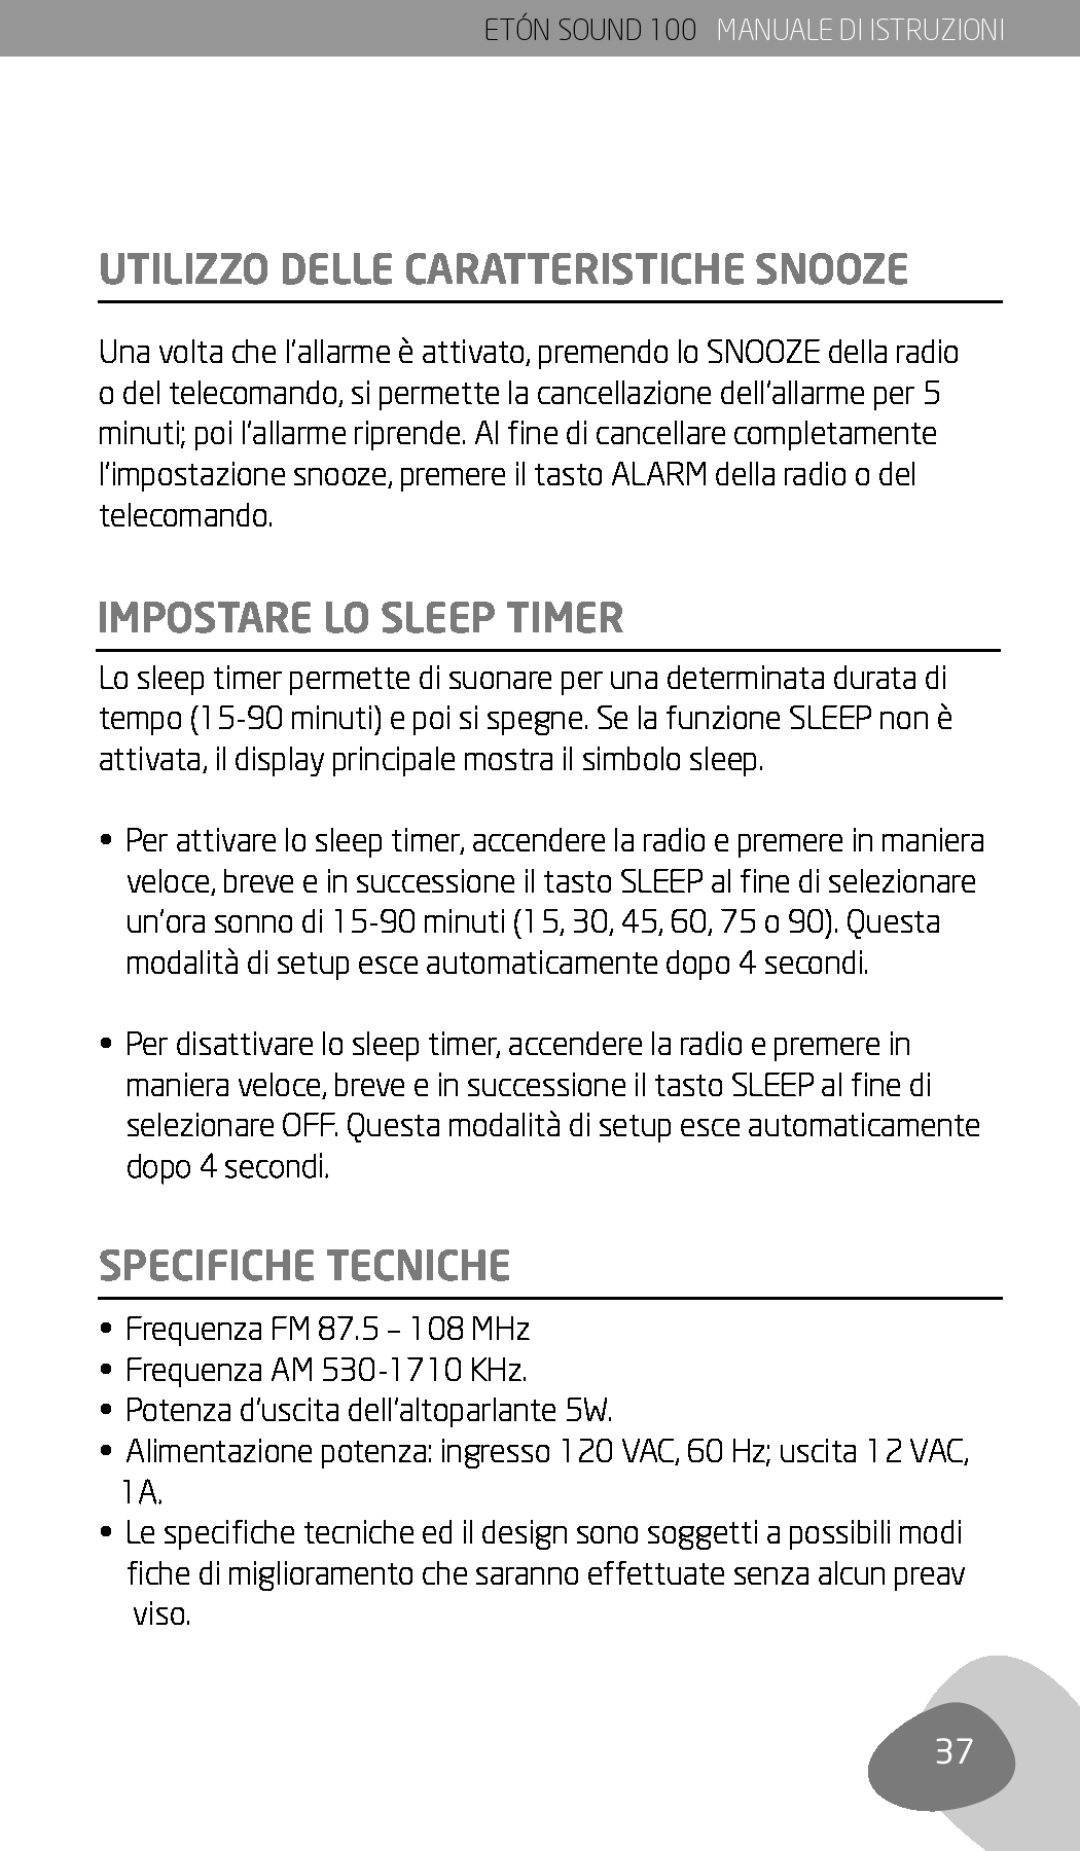 Eton Sound 100 owner manual Utilizzo Delle Caratteristiche Snooze, Impostare Lo Sleep Timer, Specifiche Tecniche 